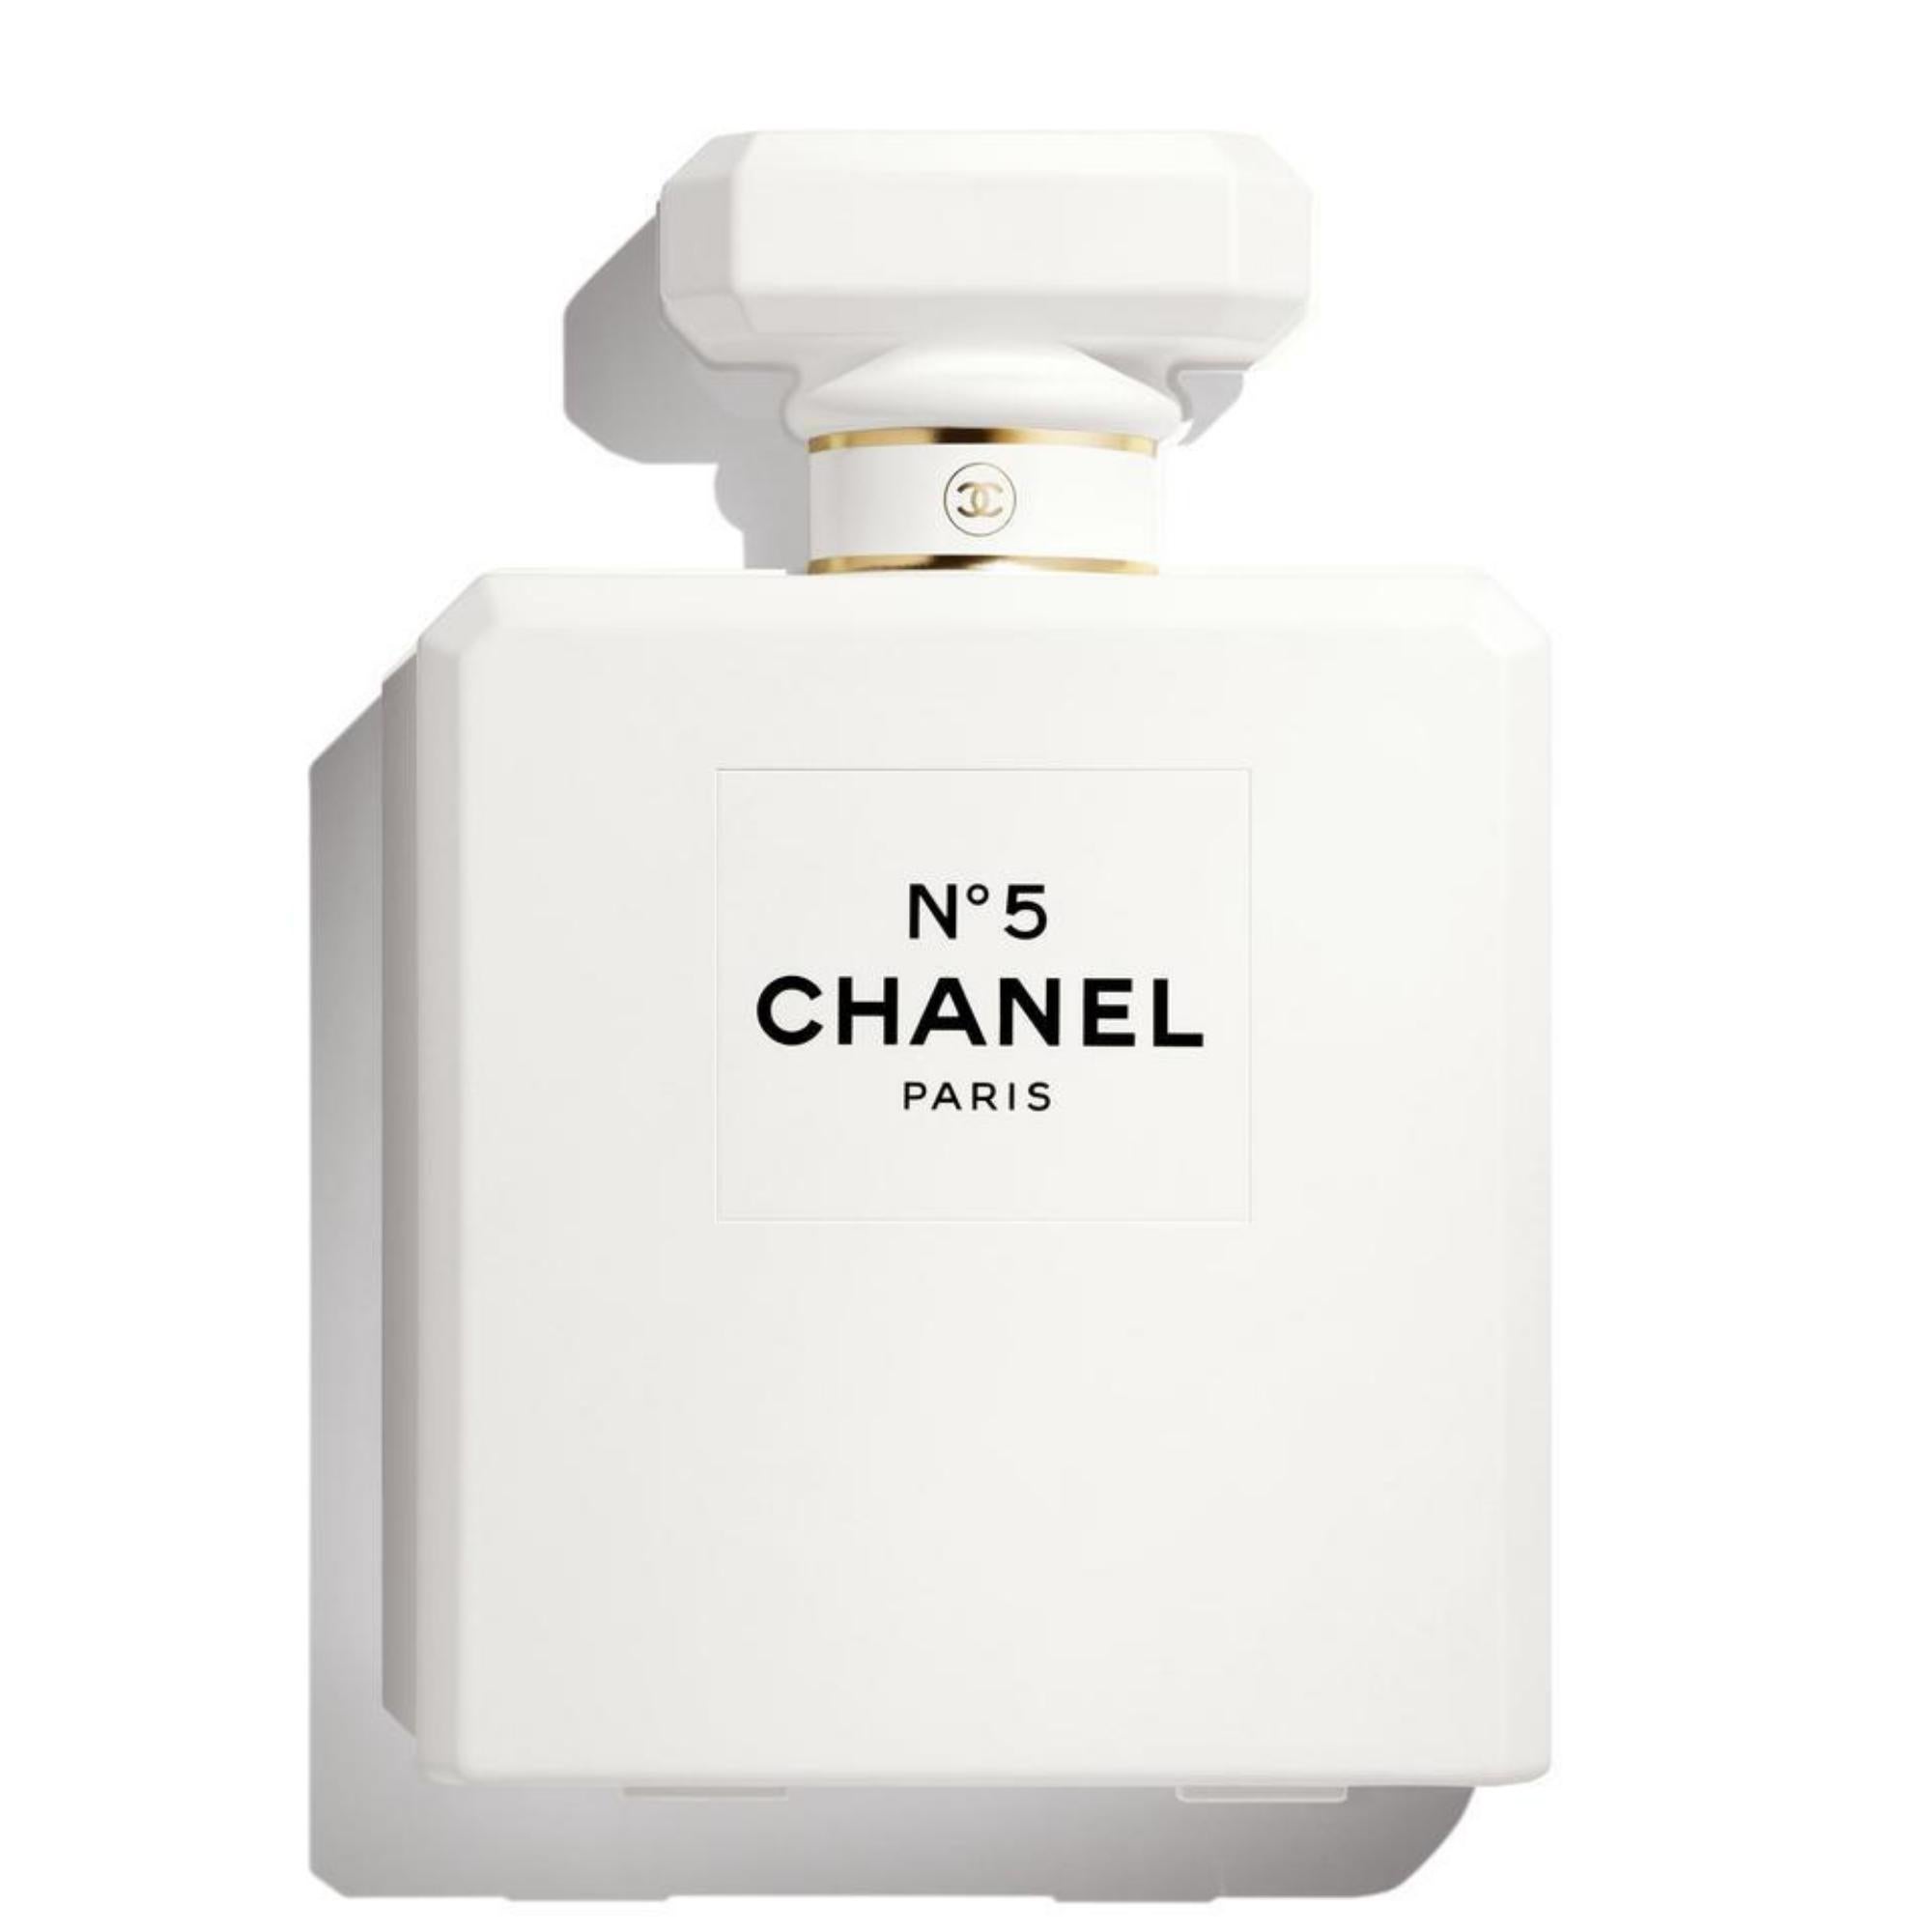 Chanel SOLD OUT EVERYWHERE 2021 Calendrier de l'Avent avec 27 cadeaux 1220c51
Calendrier de l'Avent Chanel 2021
Vendu partout
édition limitée
27 compartiments
Comprend la facture et la boîte